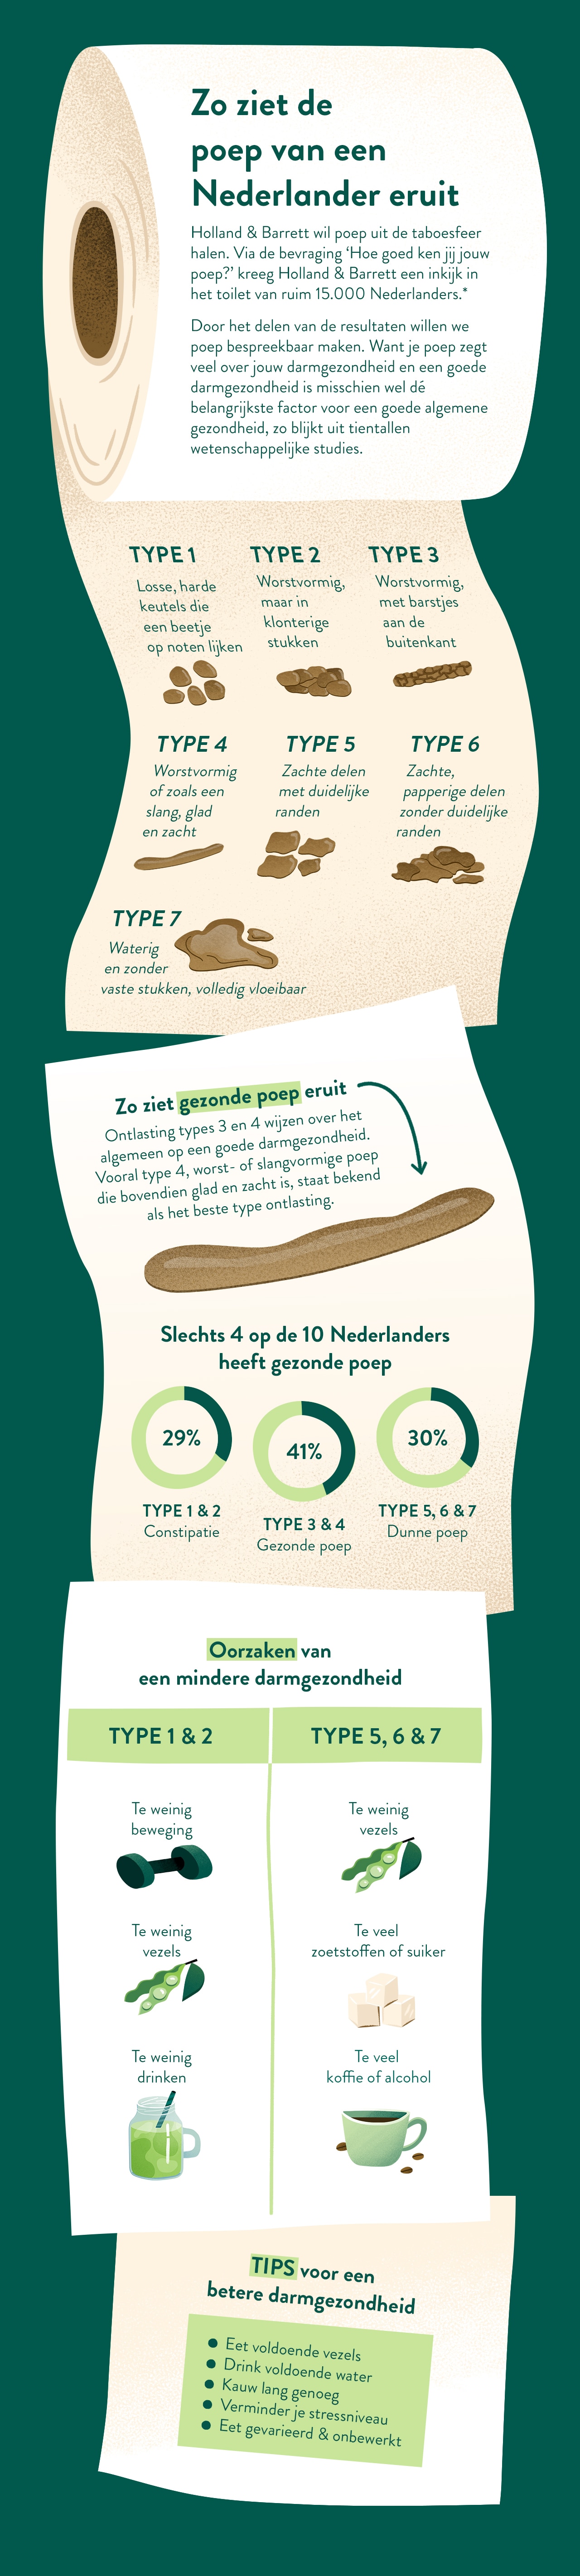 infographic_poep